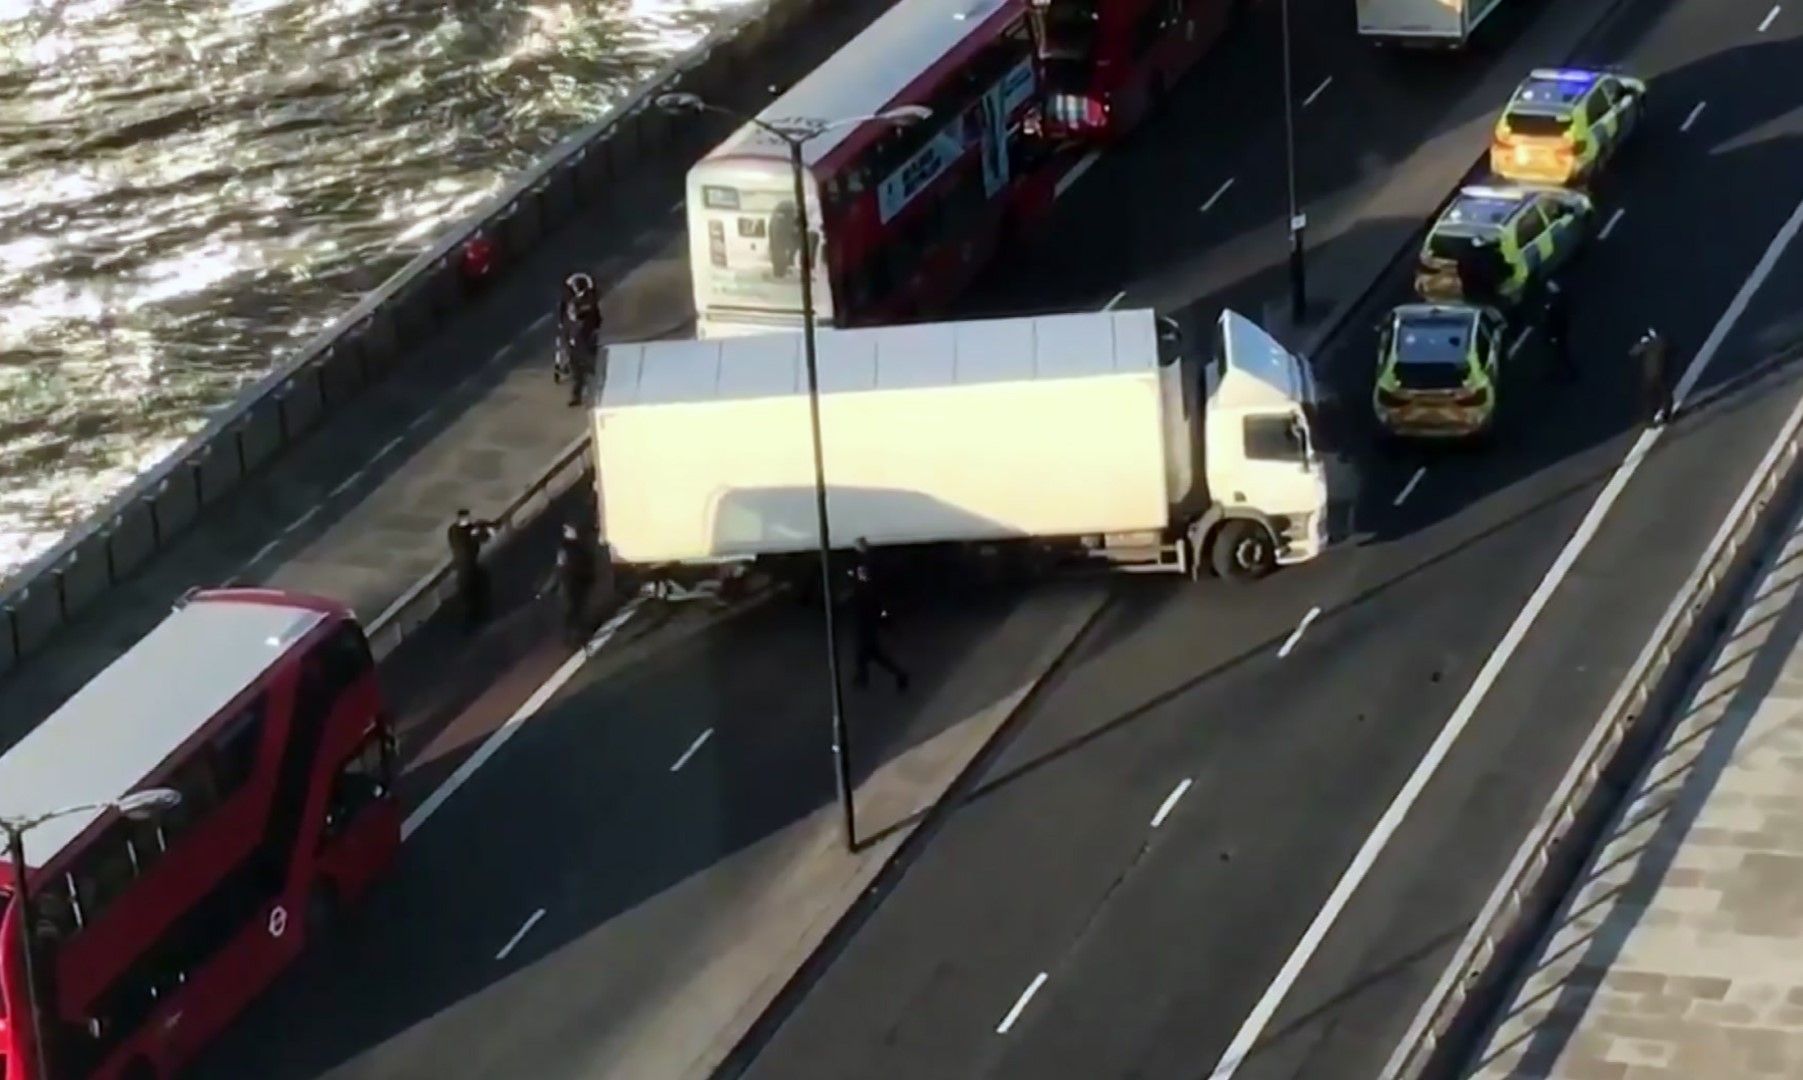 Снимка, свалена от видео, показва полиция обградила камион, спрял напряко на Лондон бридж на мястото на инцидента, където спецчасти застреляха нападател с нож